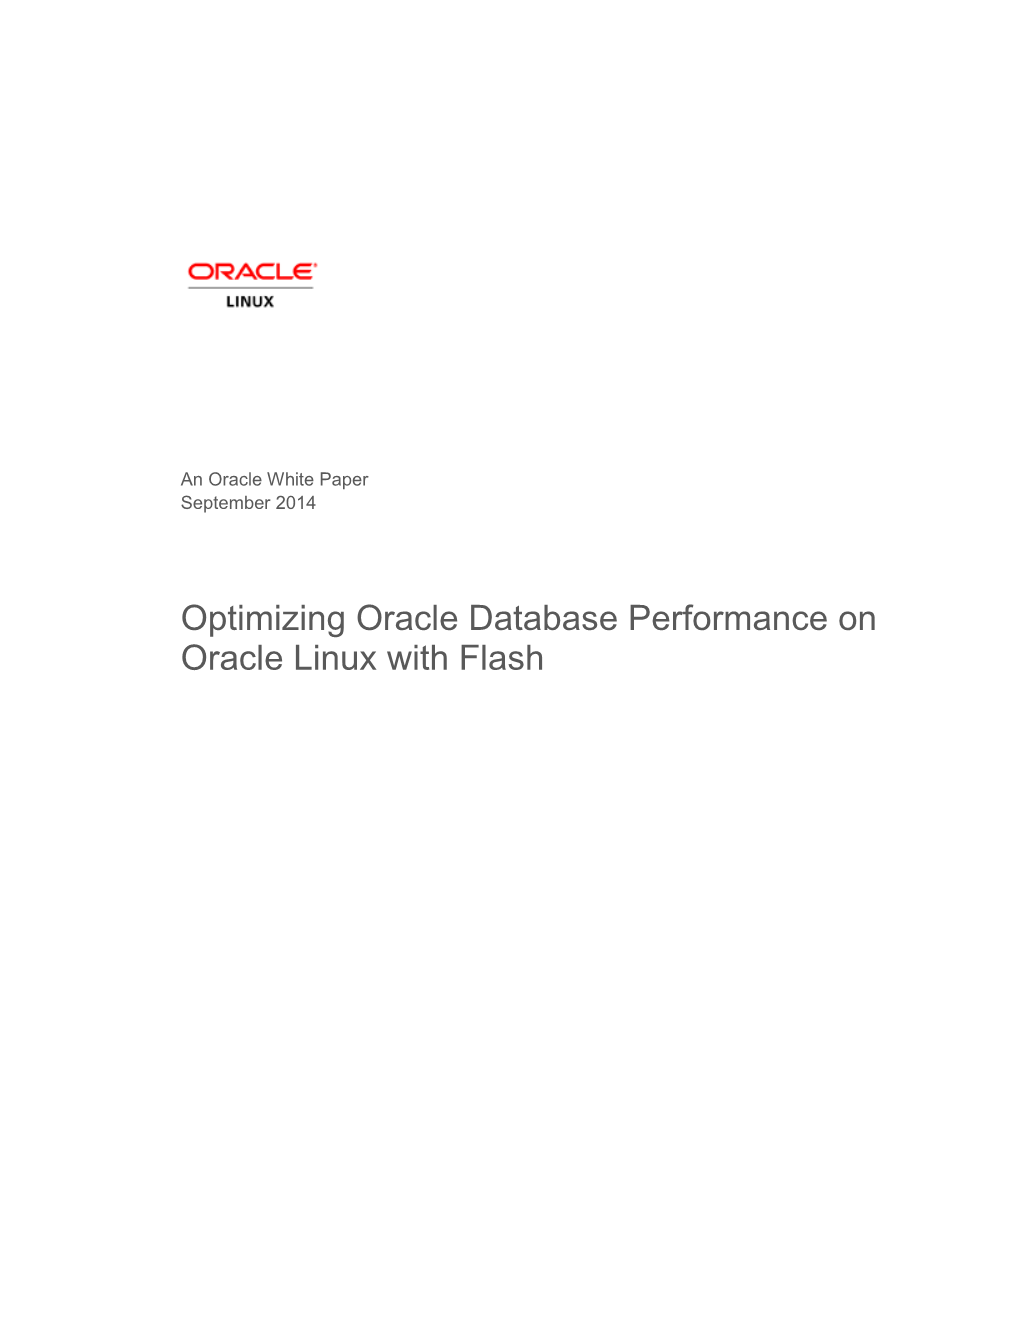 Optimizing Oracle Database on Oracle Linux with Flash